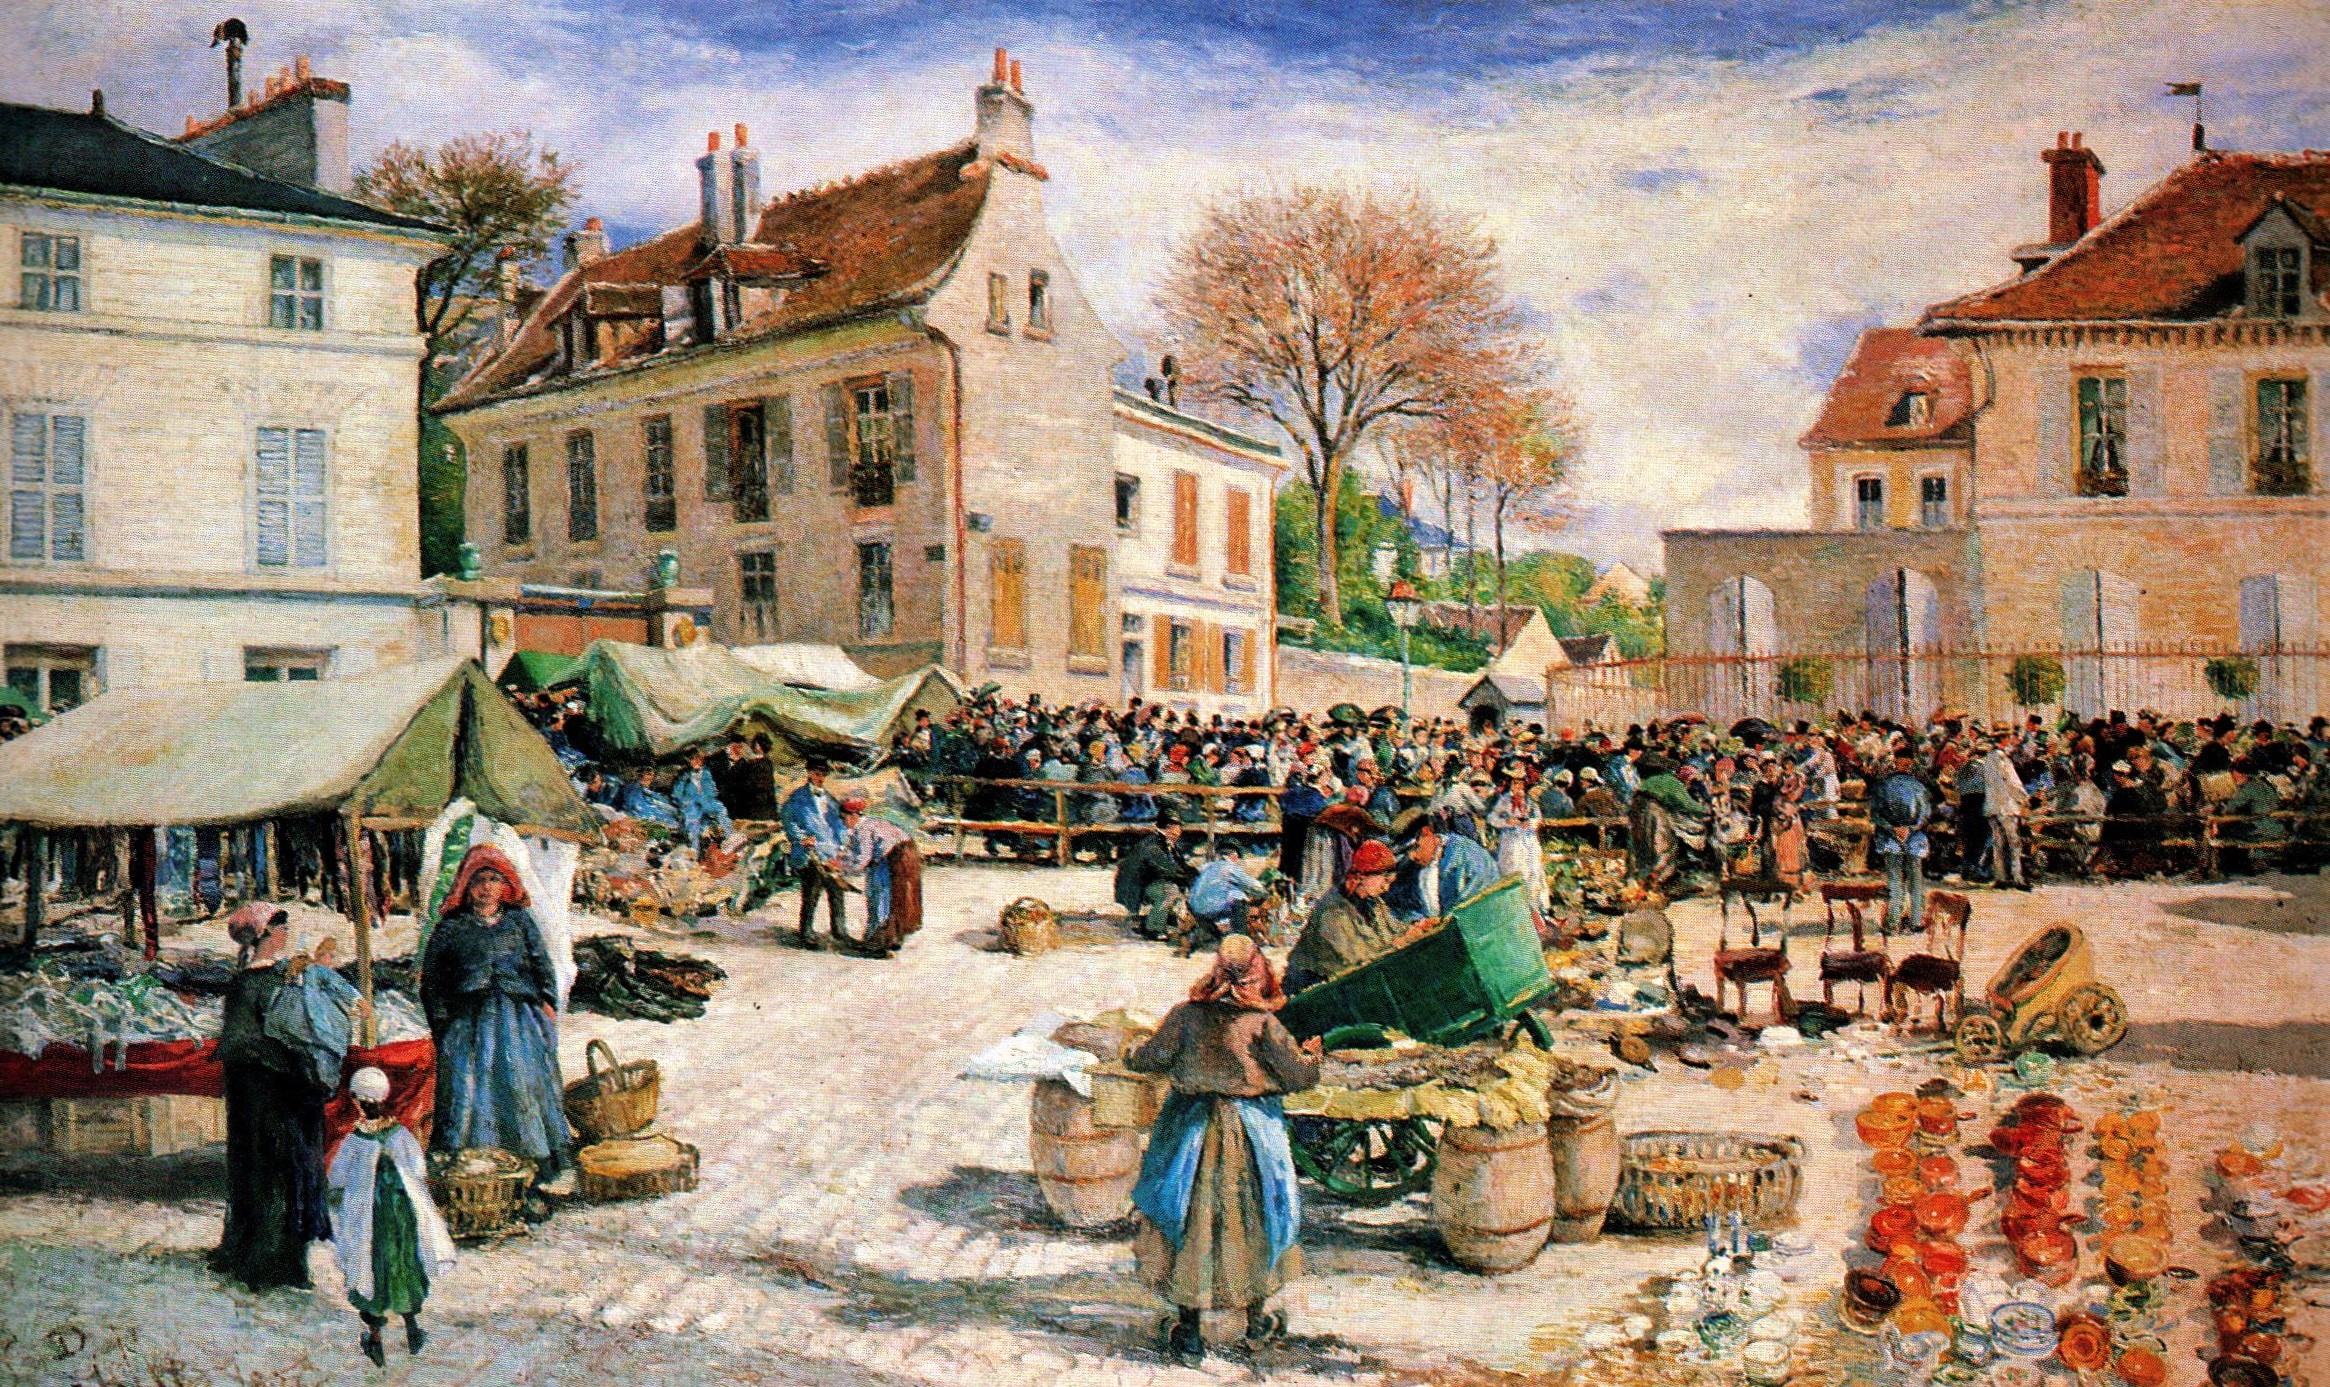 Ludovic Ludovic Piette, 3IE-1877-132, Le marché de la place de l'Hôtel de Ville, à Pontoise. = 1876, The marketplace in front of the town hall at Pontoise, 111x186, MTD Pontoise (R89,p61;iR6;iR23;iR2;iR77;R2,p205+230;R90II,p79+97;M173).